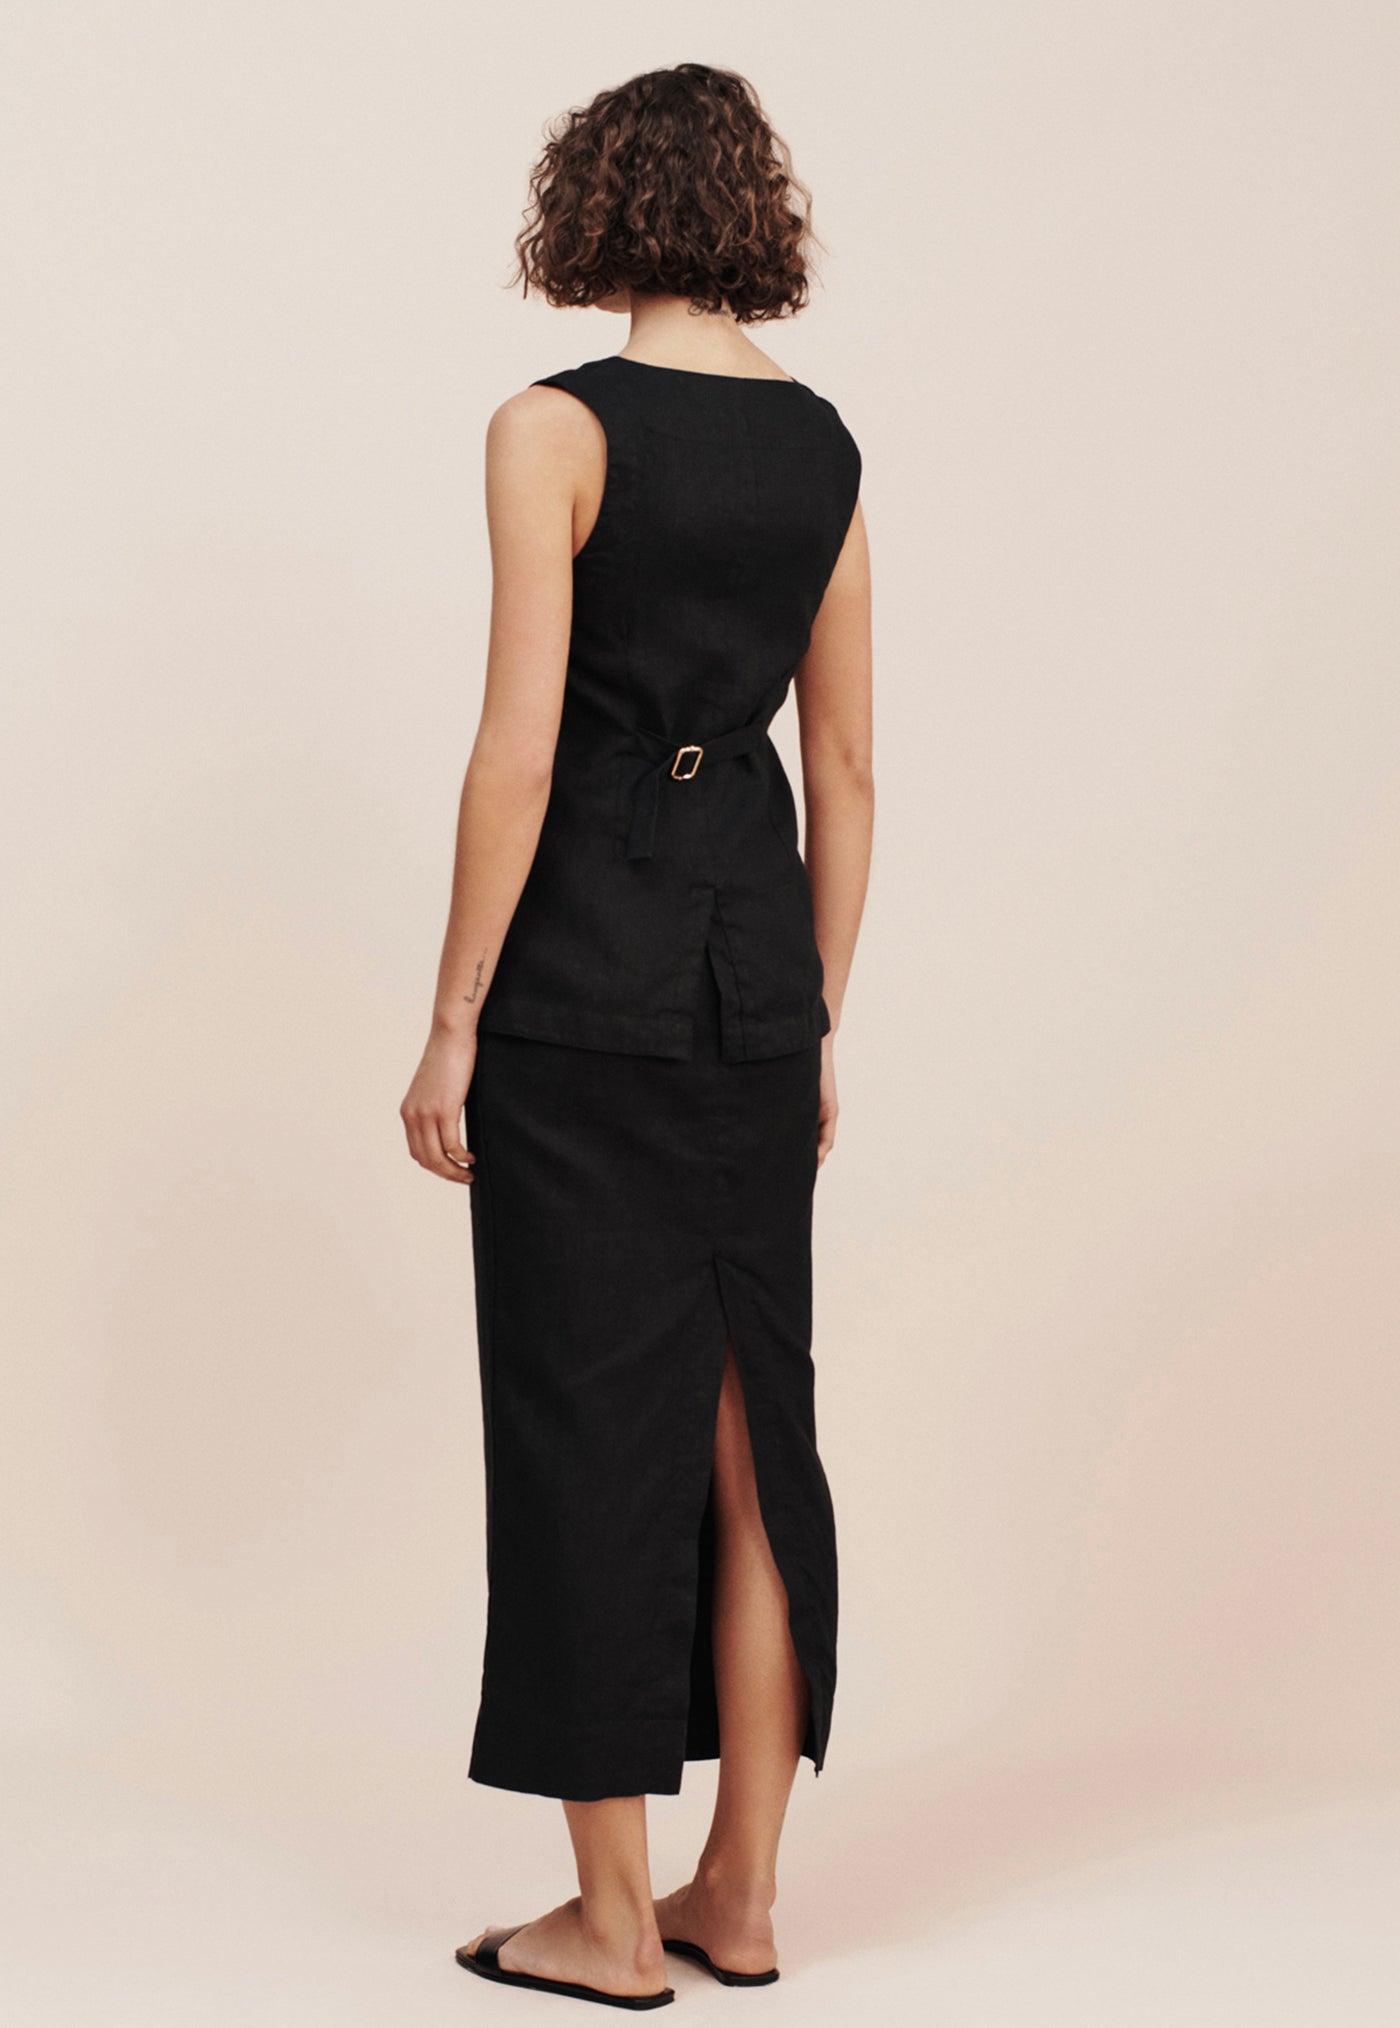 Emma Vest - Black sold by Angel Divine